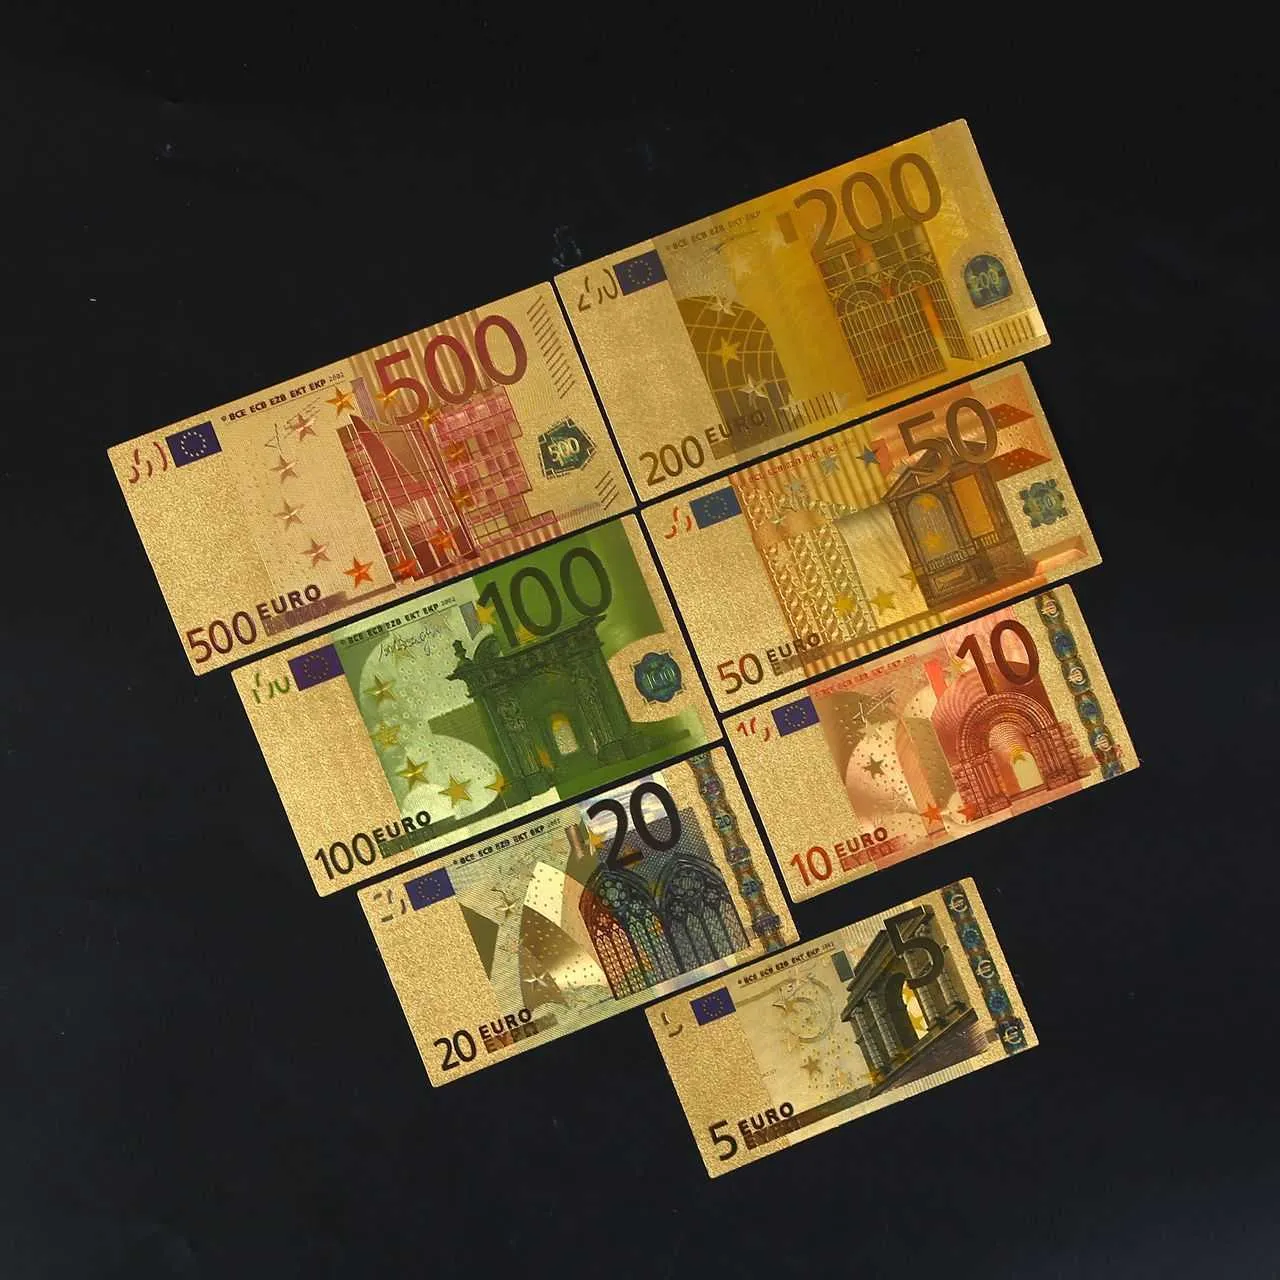 Arti e mestieri Banconote commemorative di vendita calda in lamina d'oro personalizzate in euro a colori Collezione da 7 pezzi artigianato commemorativo e ornamentale